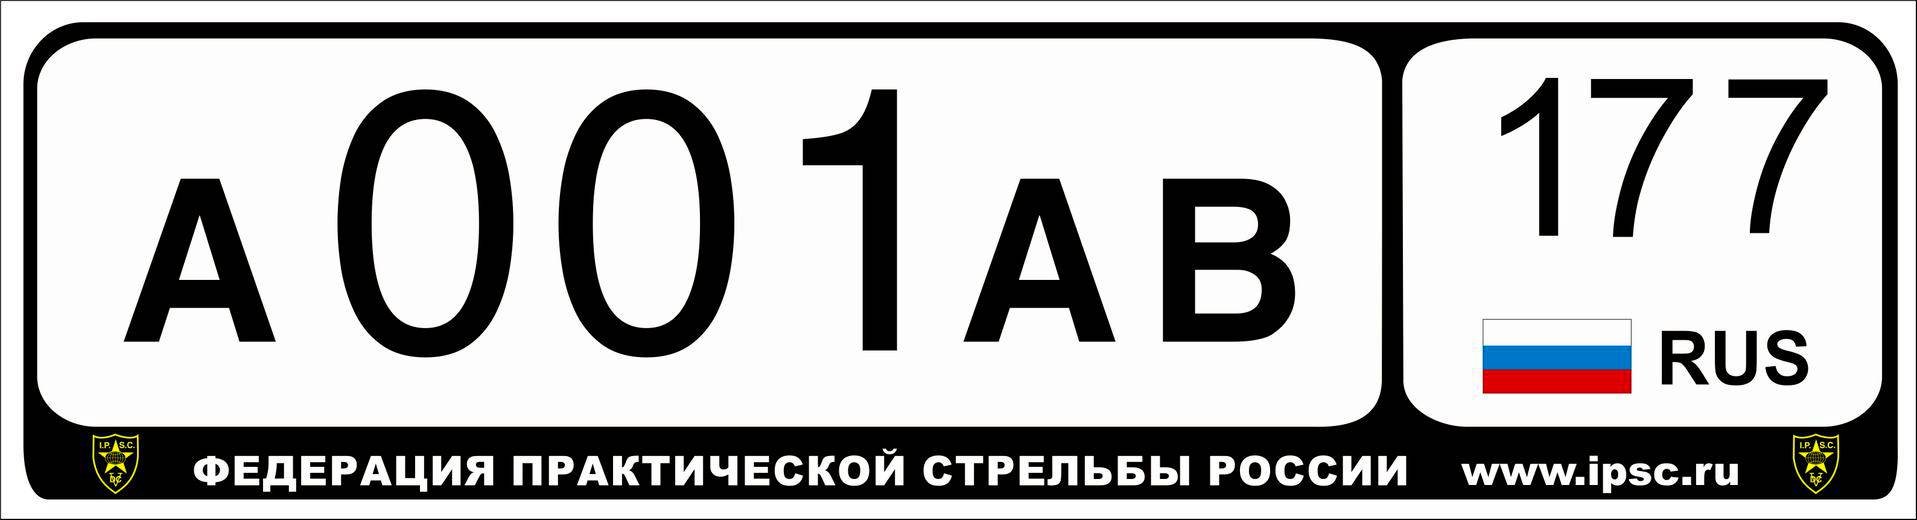 Сайт с бесплатными номерами россии. Номерной знак автомобиля. Макет автомобильного номера. Российские номерные знаки. Табличка автомобильный номер.